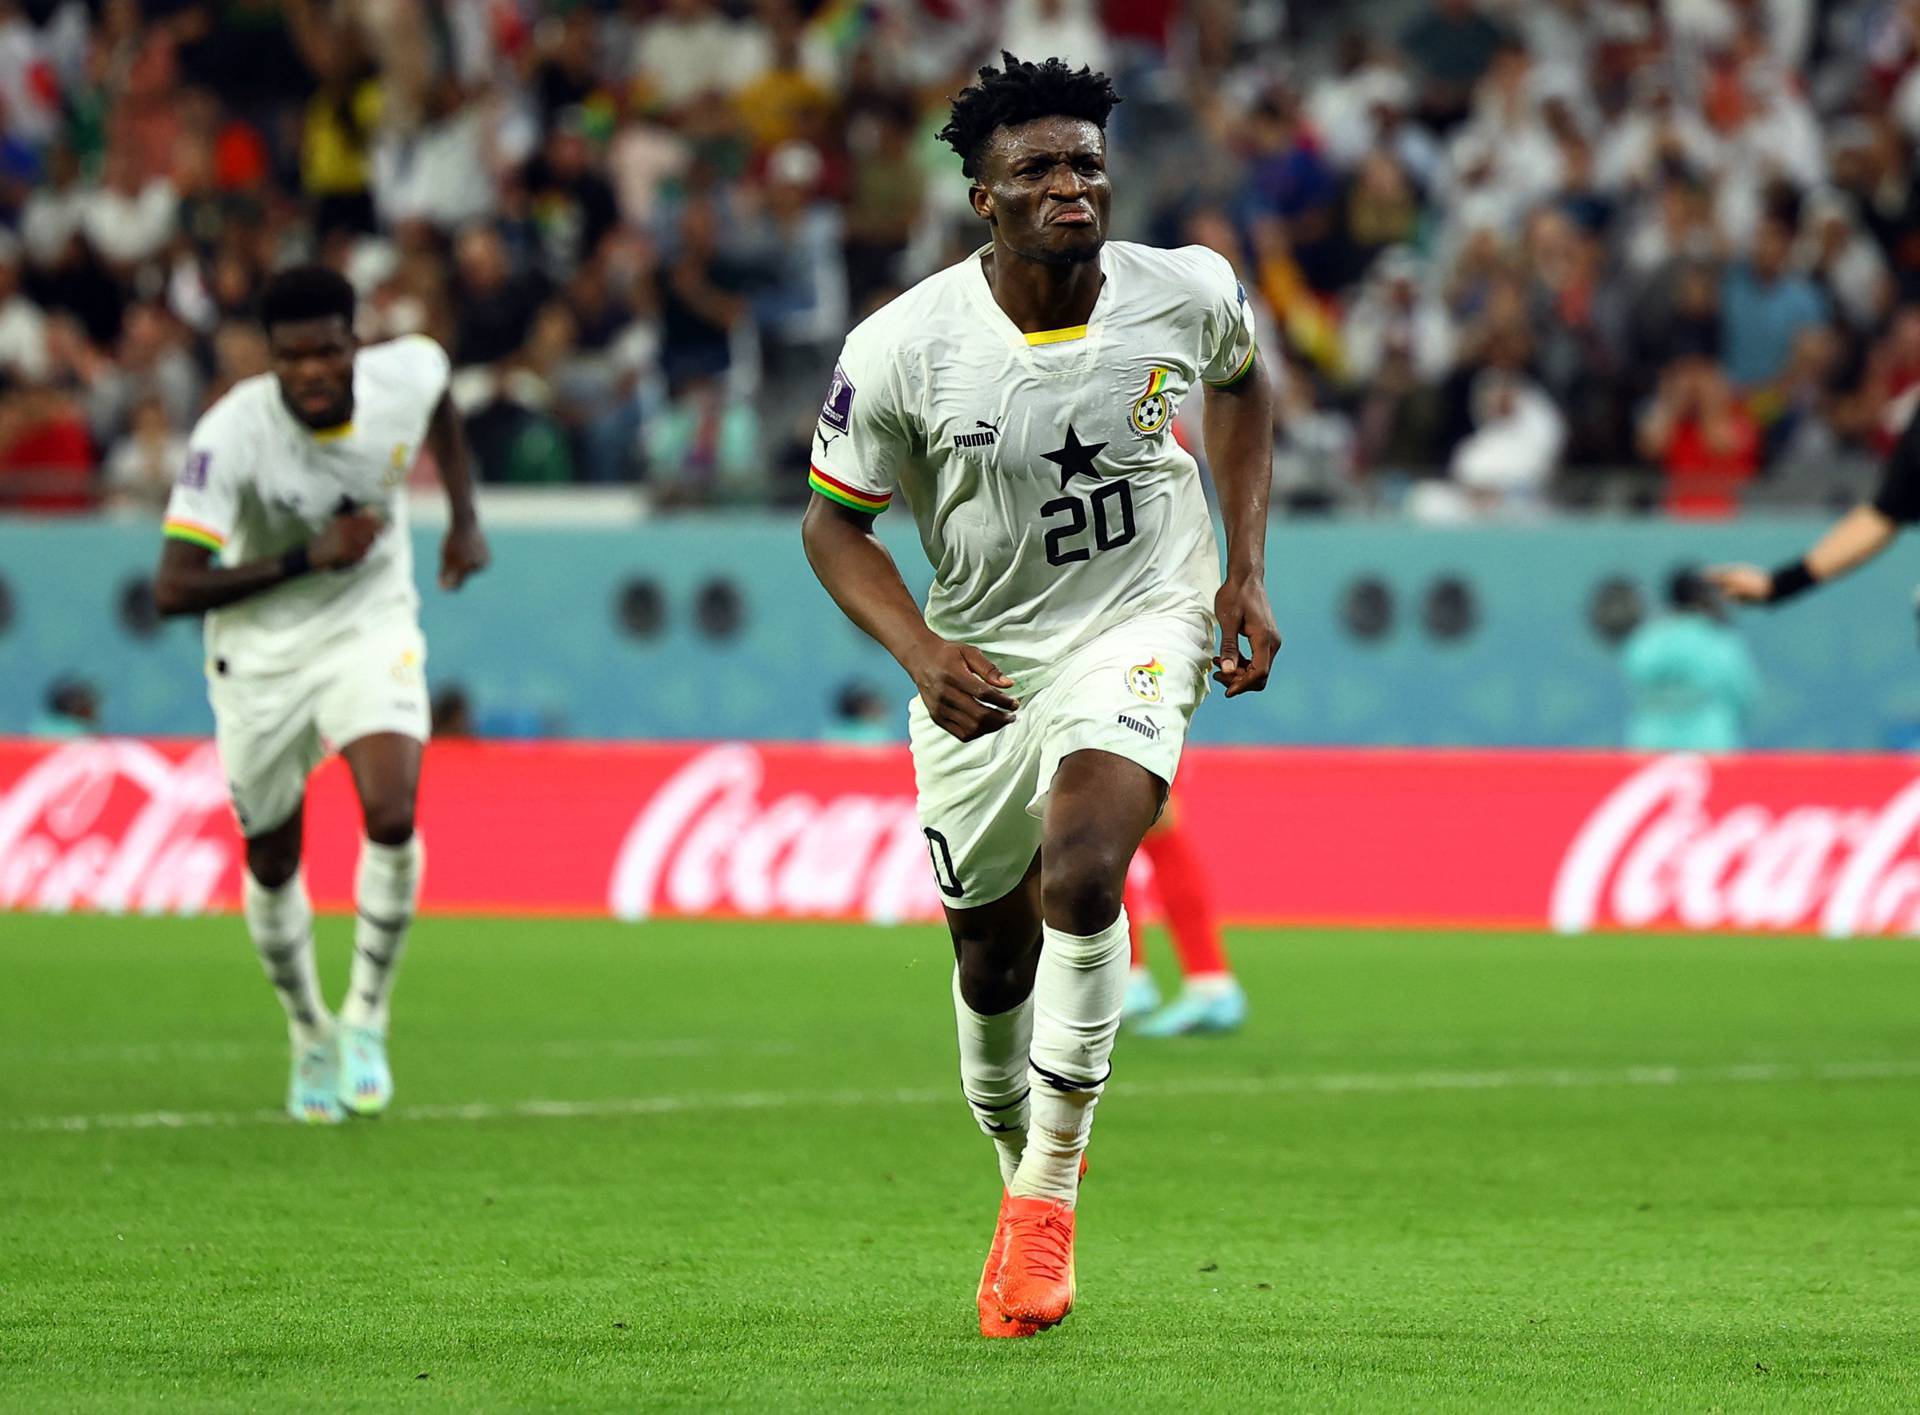 FIFA World Cup Qatar 2022 - Group H - South Korea v Ghana